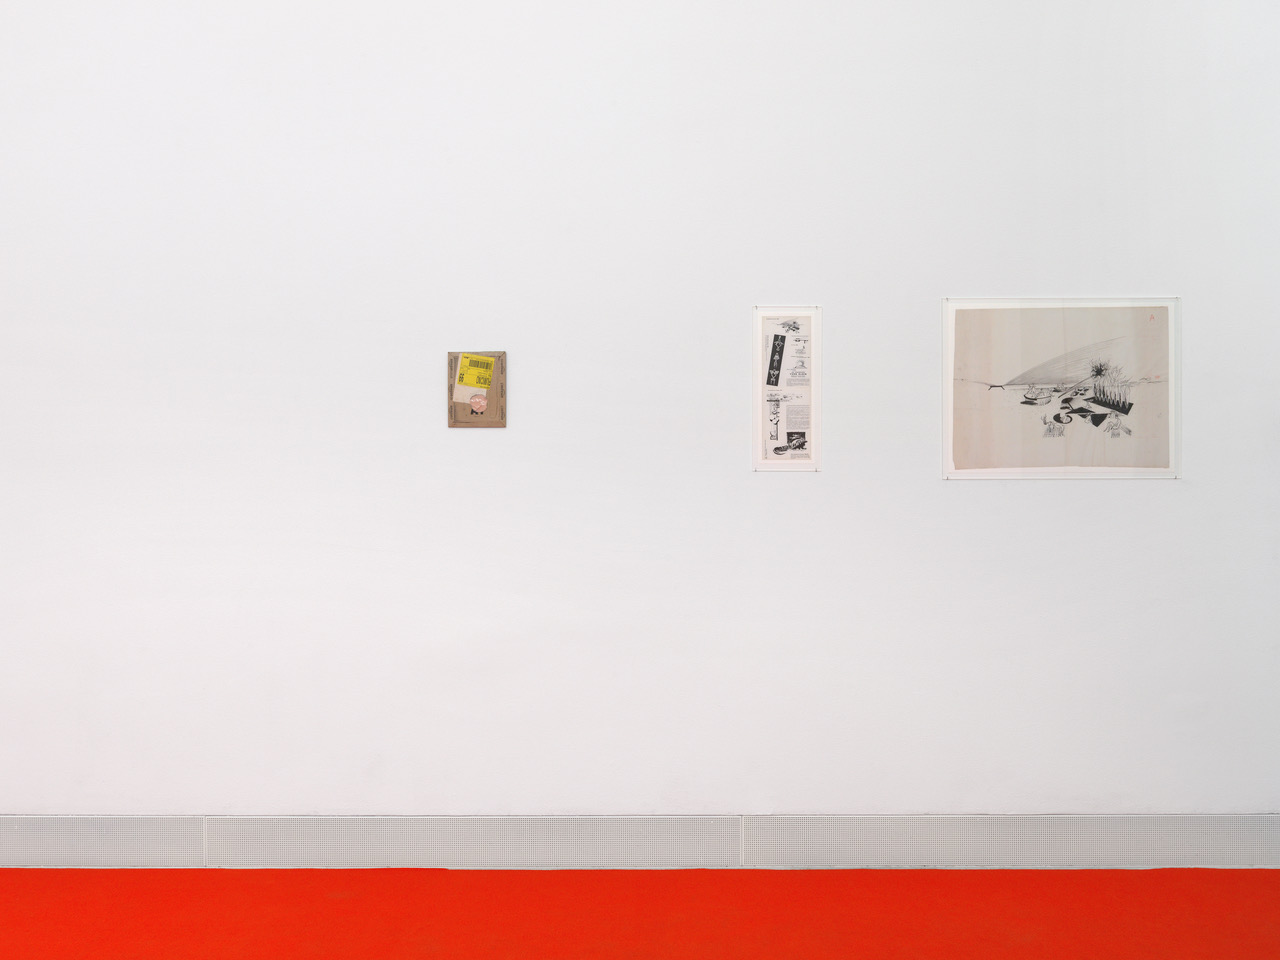 Vue de l'exposition "Absolute Thresholds", Galerie Francesca Pia, 2019